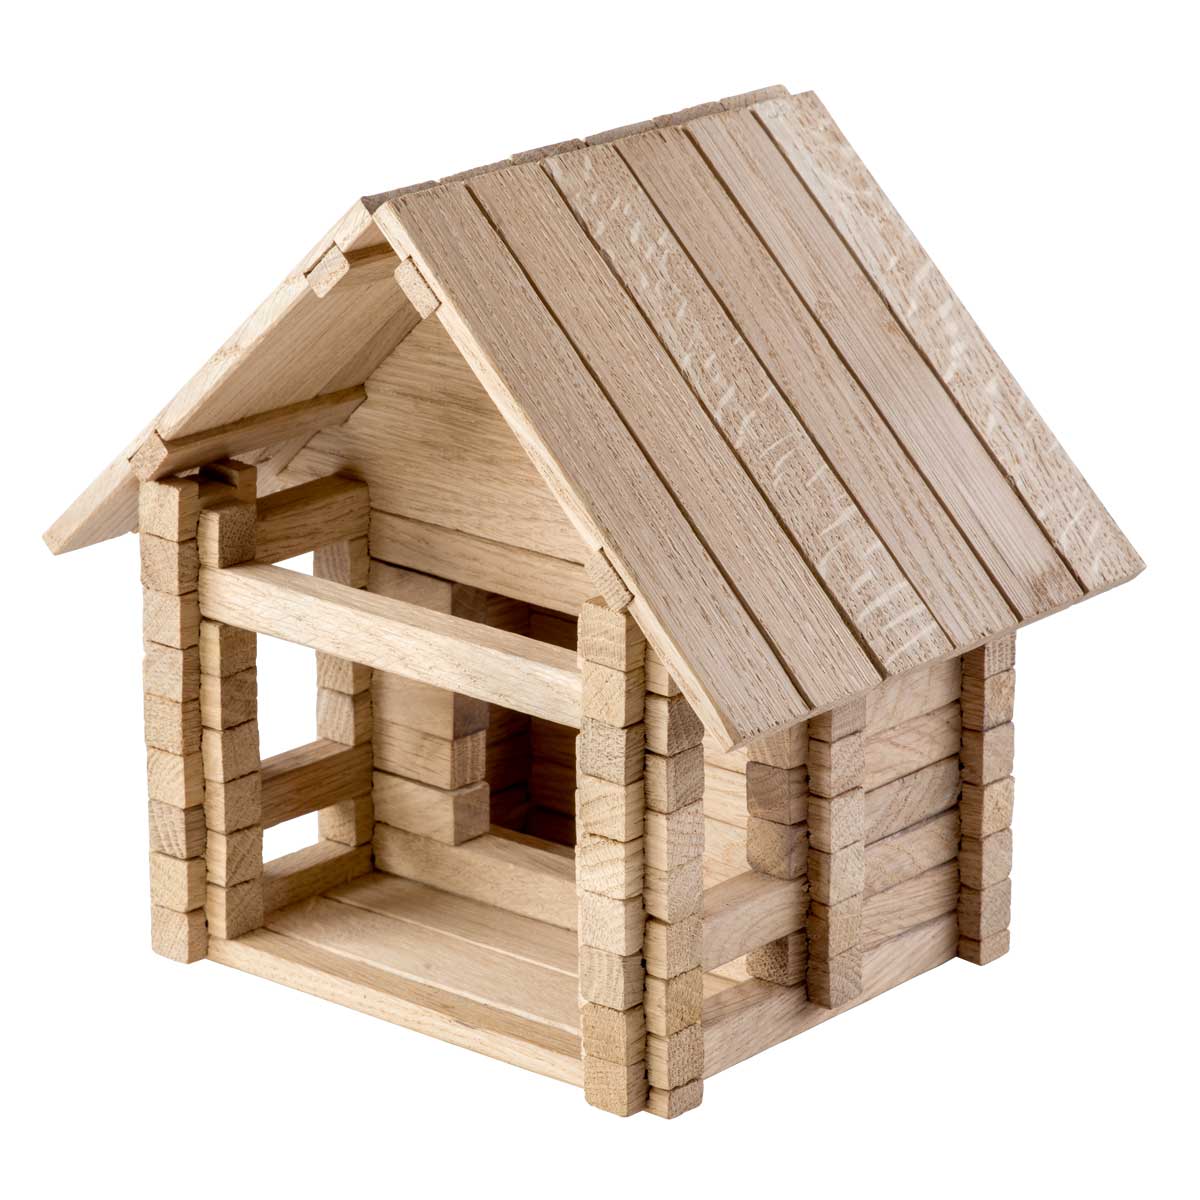 Igroteco деревянный конструктор - домик для детей "Деревенский домик", 146 шт.